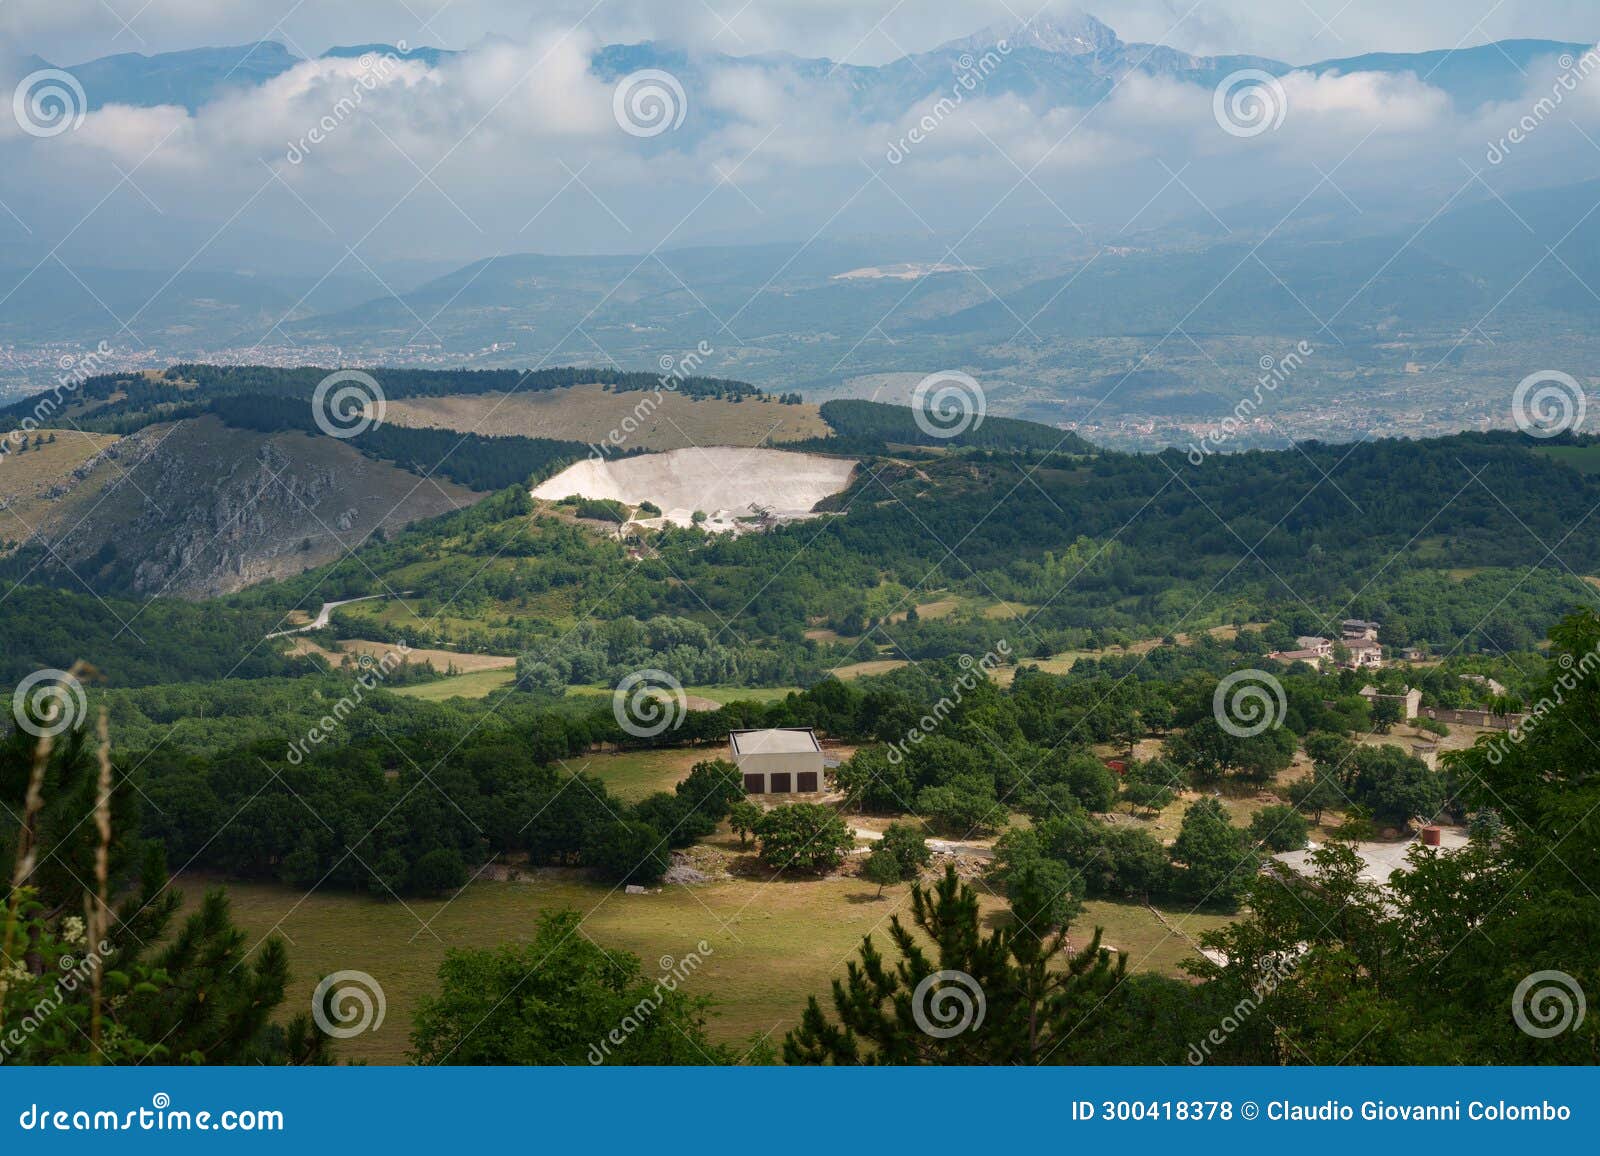 mountain landscape along the road to rocca di cambio, abruzzo